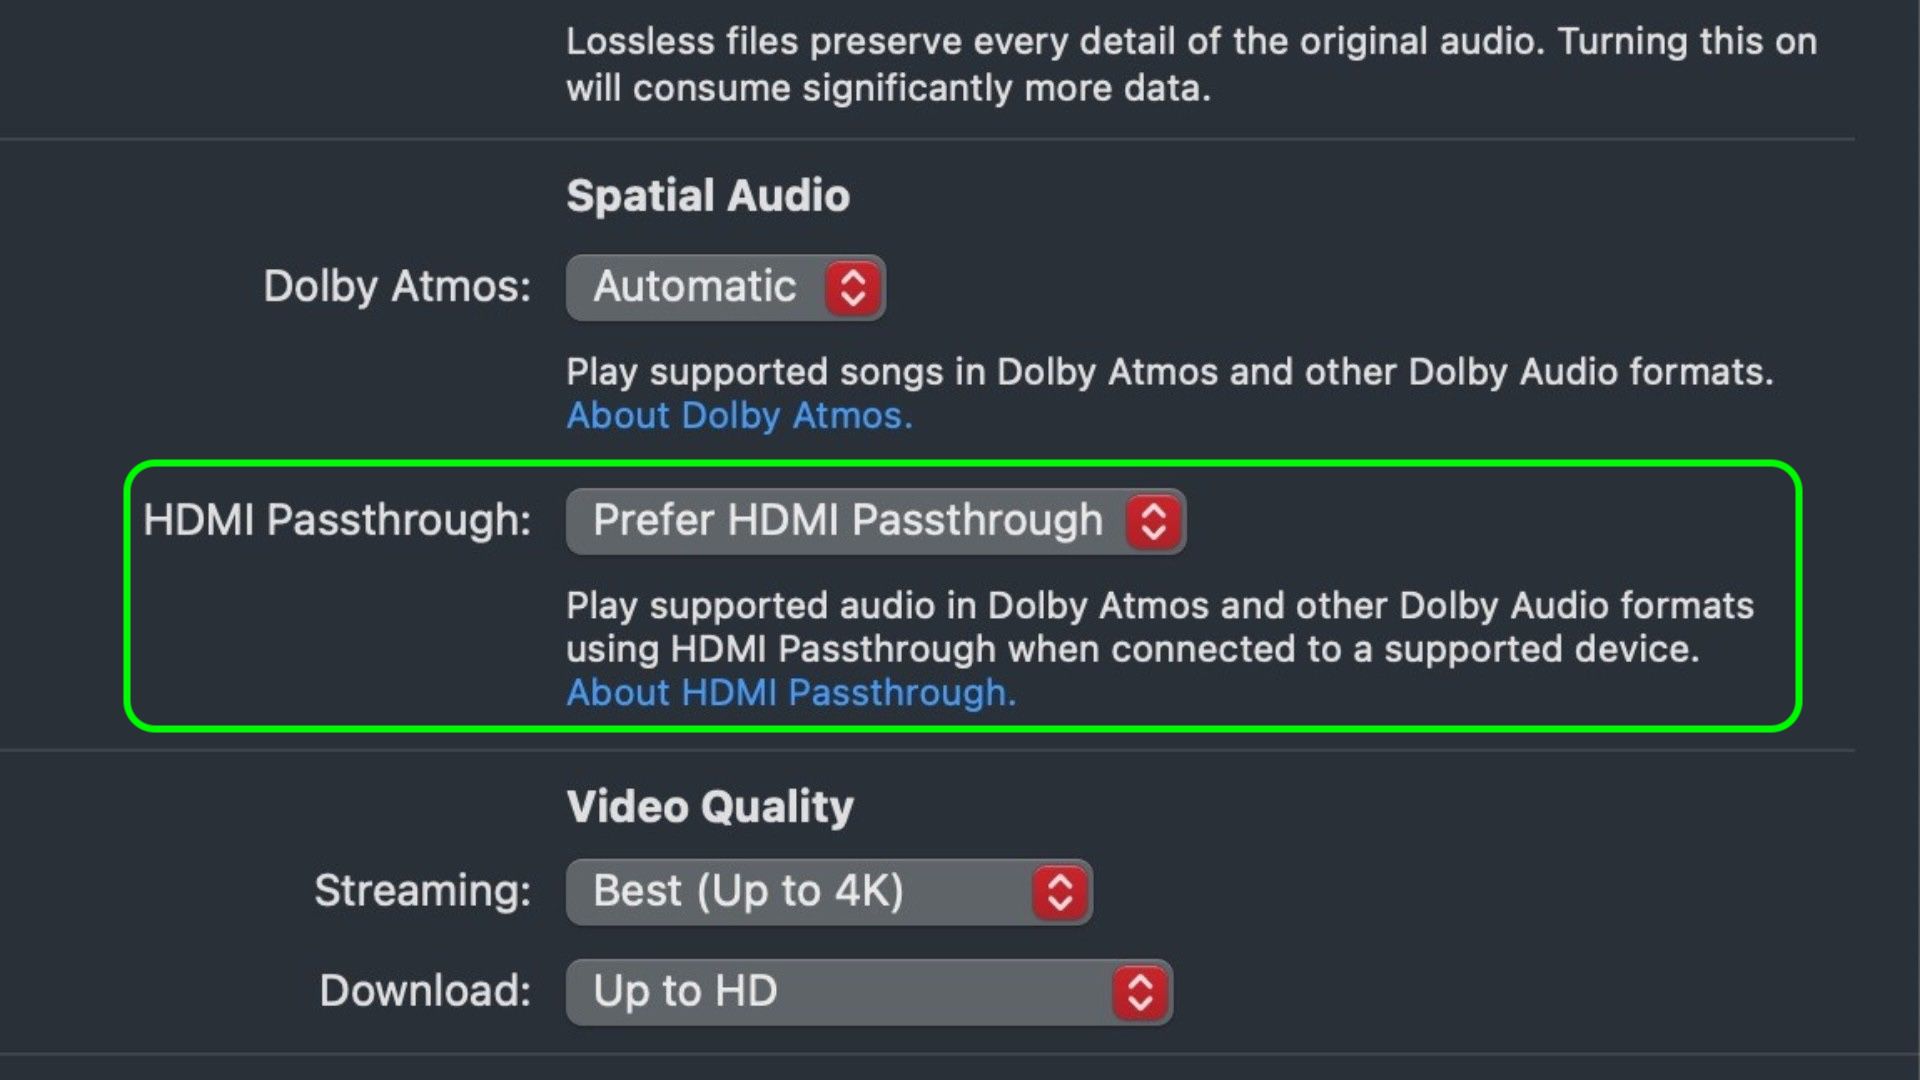 macOS Sequoia ofrece soporte HDMI para contenido de Dolby Atmos: ¡Descubre todas sus ventajas!